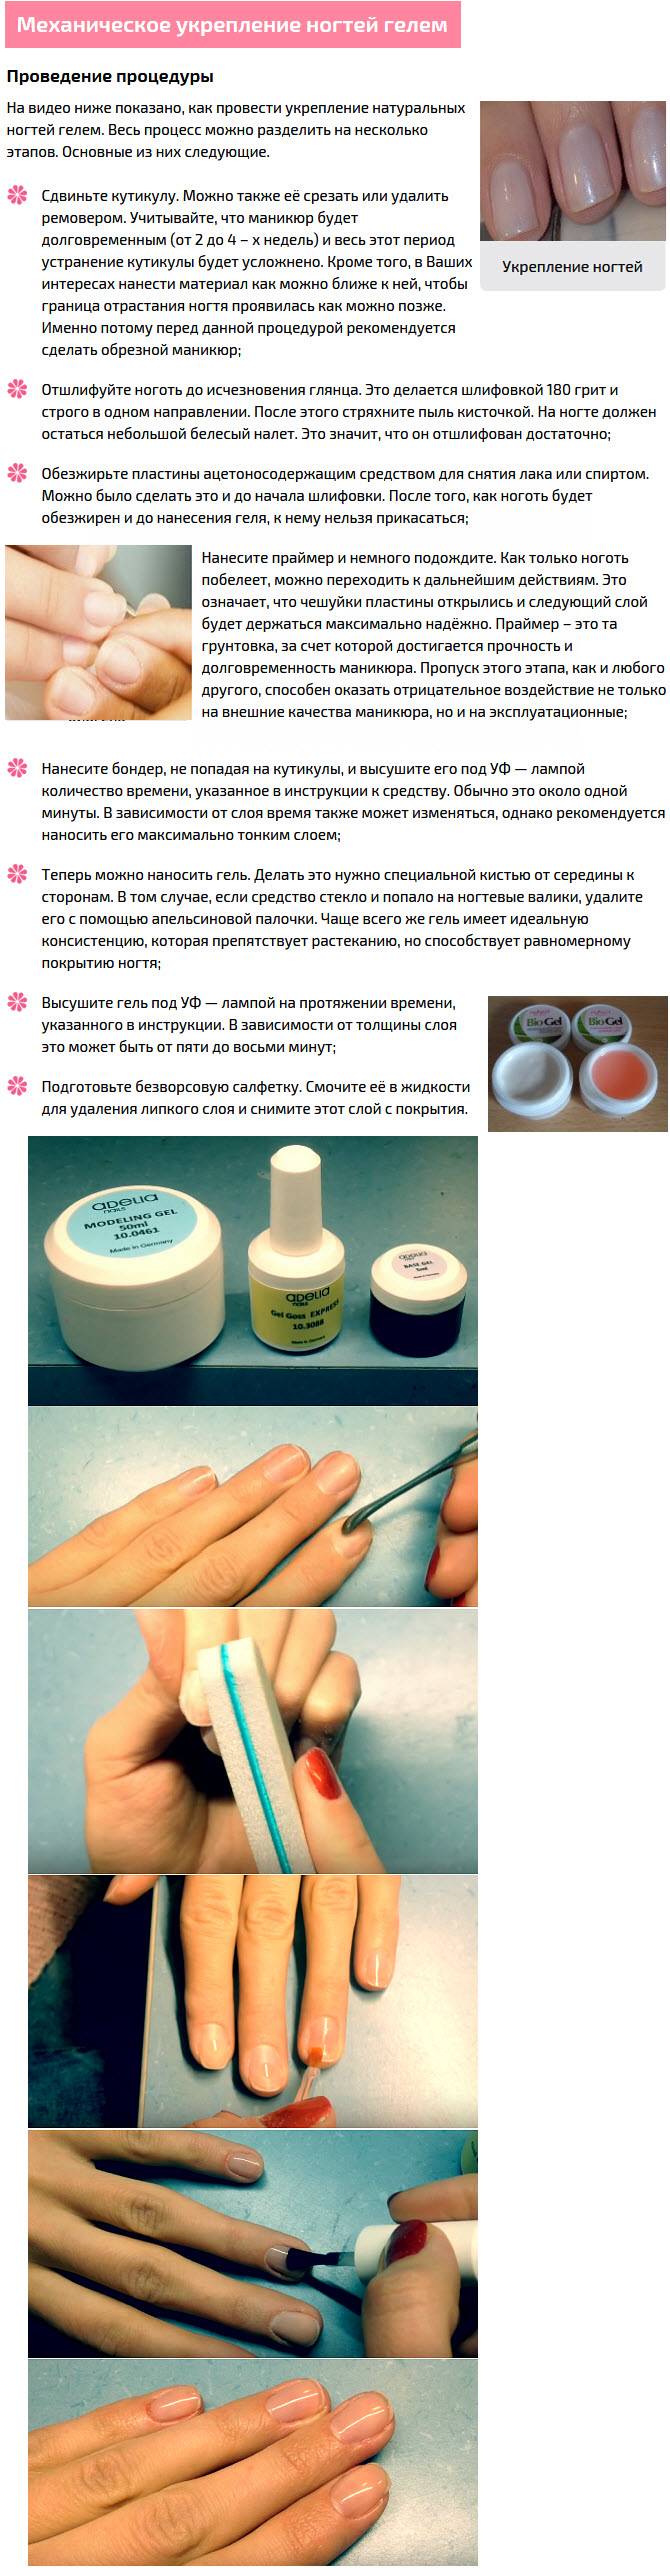 Покрытие биогелем ногтей дома: фото и видео обучение